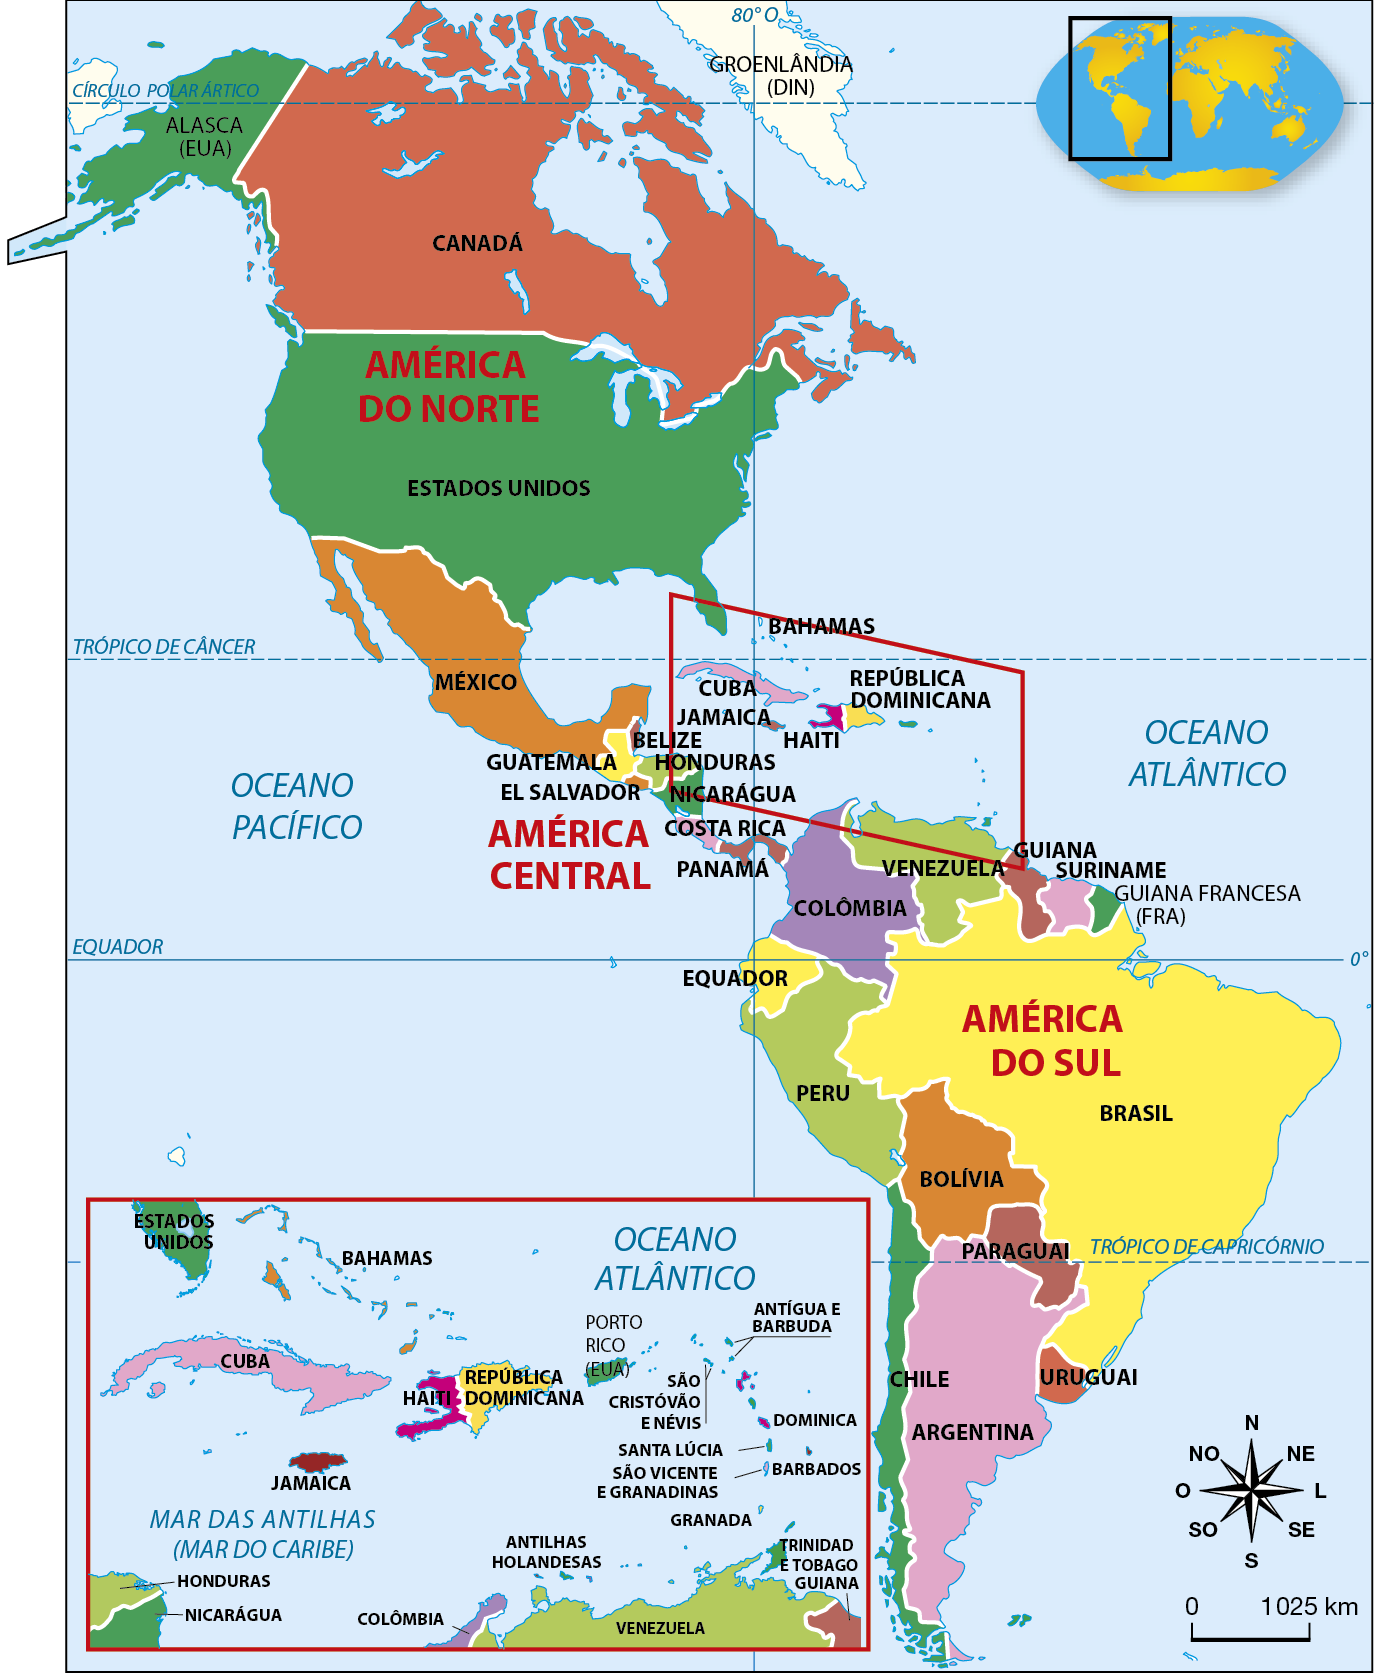 Mapa. América: Divisão Política. Representação do continente americano dividido em três partes. A América do Norte possui terras que se estendem acima do Círculo Polar ártico ao sul do Trópico de Capricórnio; a América Central se encontra entre o Trópico de Câncer e o Equador; e a América do Sul se encontra entre o Trópico de Câncer e o Círculo Polar Antártico. A América do Norte é composta por: Groenlândia (território dinamarquês), Alasca (território estadunidense), Canadá, Estados Unidos e México. A América Central é composta por Bahamas, Cuba, Antígua e Barbuda, Guatemala, República Dominicana, Haiti, Jamaica, Belize, Honduras, El Salvador, Nicarágua, Costa Rica, Panamá, além de outras ilhas. Na região da América Central, há um destaque no canto inferior esquerdo do mapa para as ilhas menores dessa região, que são reconhecidas como países. São elas, em ordem de cima para baixo, Porto Rico (território estadunidense), Antígua e Barbuda, São Cristóvão e Névis, Dominica, Santa Lúcia, São Vicente e Granadinas, Barbados, Granada, Trinidad e Tobago e Antilhas Holandesas. A América do Sul é composta por Colômbia, Venezuela, Guiana, Suriname, Guiana Francesa (território francês), Equador, Brasil, Peru, Bolívia, Chile, Paraguai, Argentina e Uruguai. Os países estão representados por diferentes cores. O Oceano Atlântico, à leste da América, e o Oceano Pacífico, à oeste, também estão representados. Abaixo, rosa dos ventos e escala de 0 a 1.025 quilômetros.